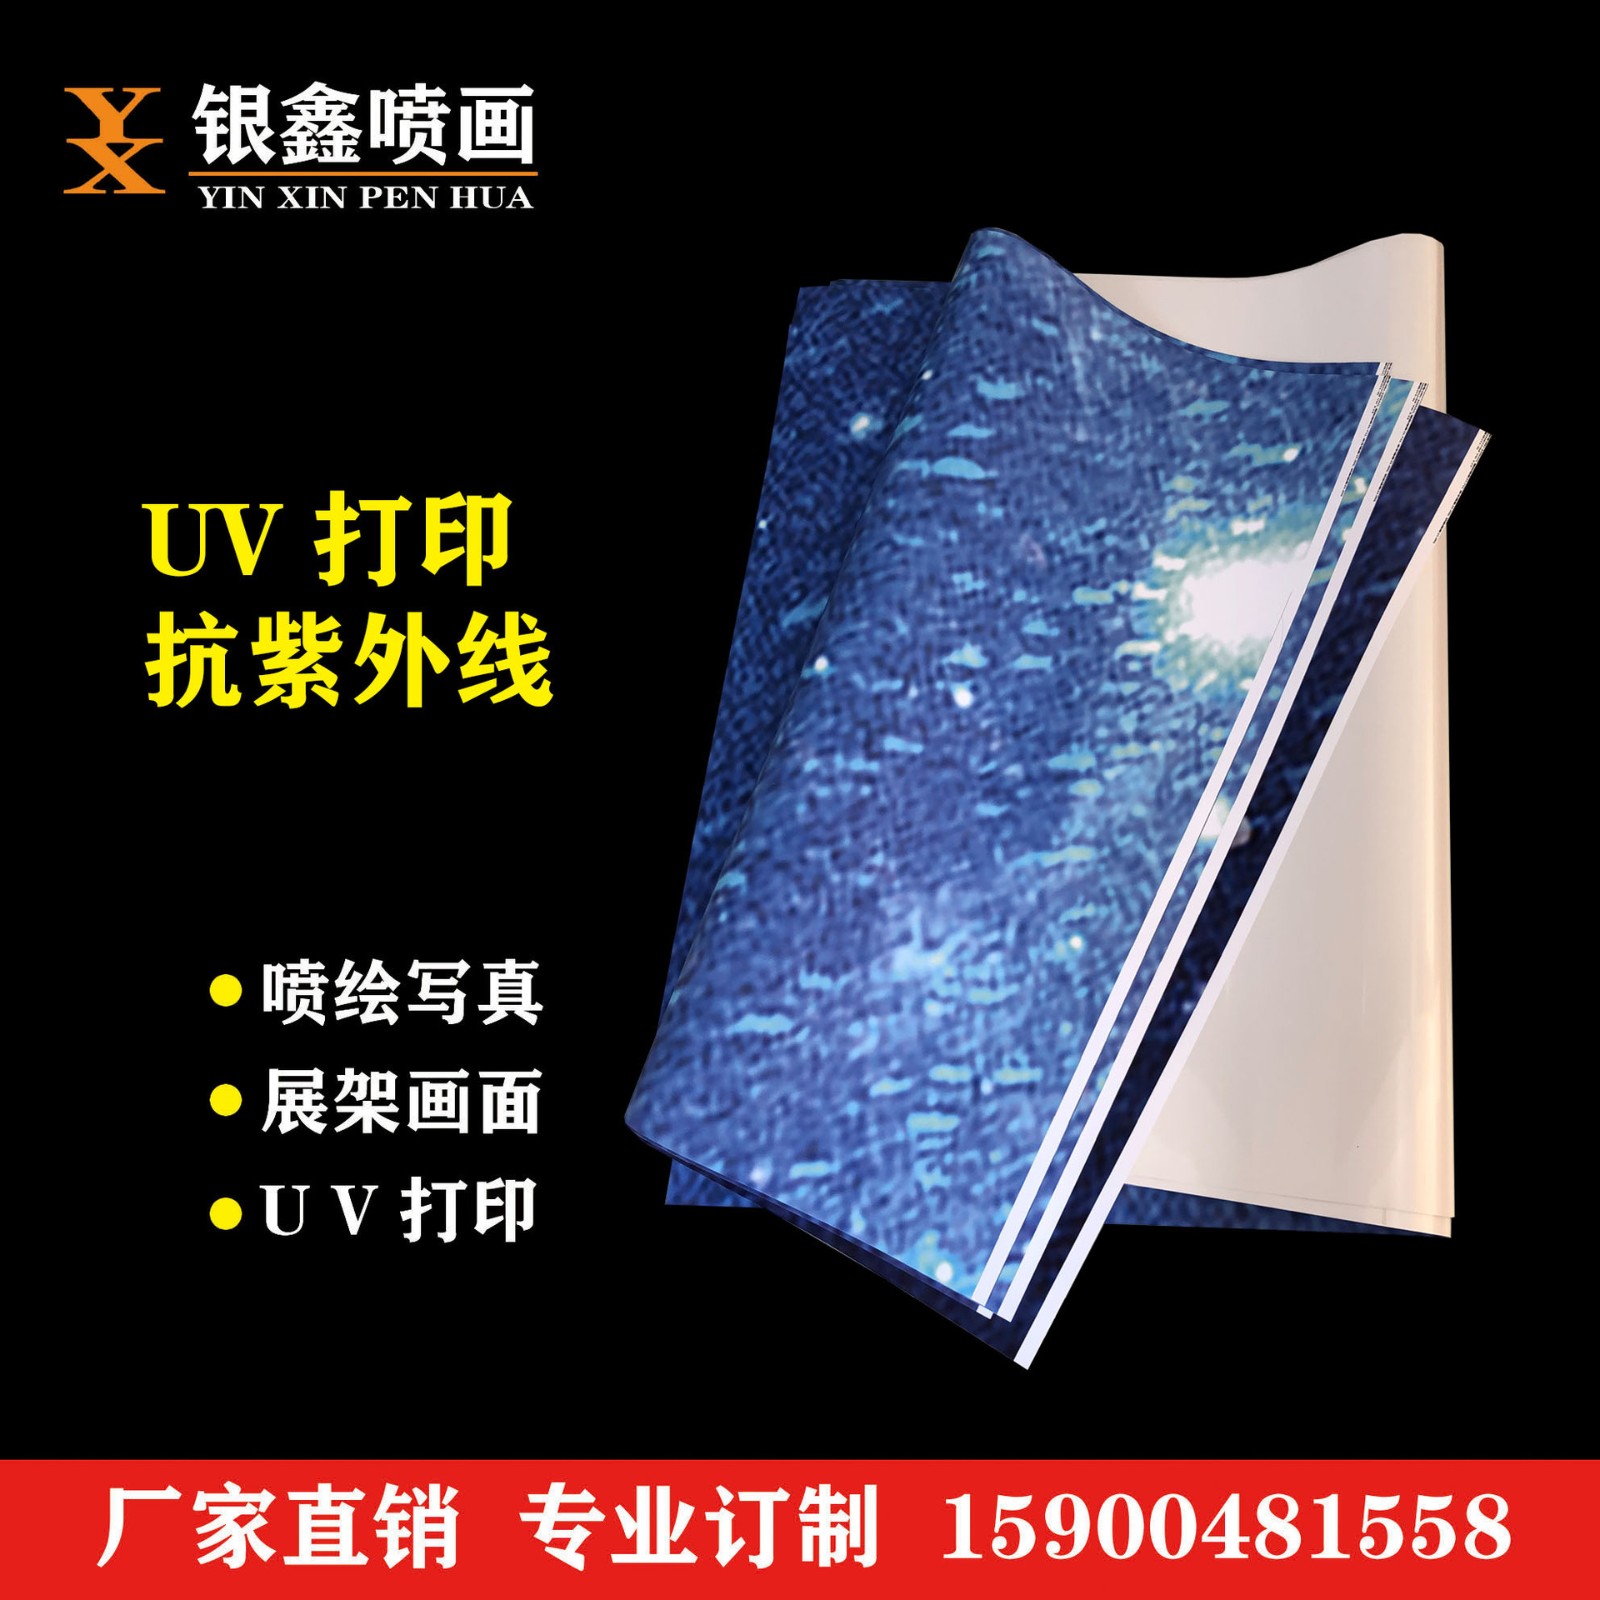 上海广告制作户外UV印刷广告喷绘写真海报UV海报写真制作打印